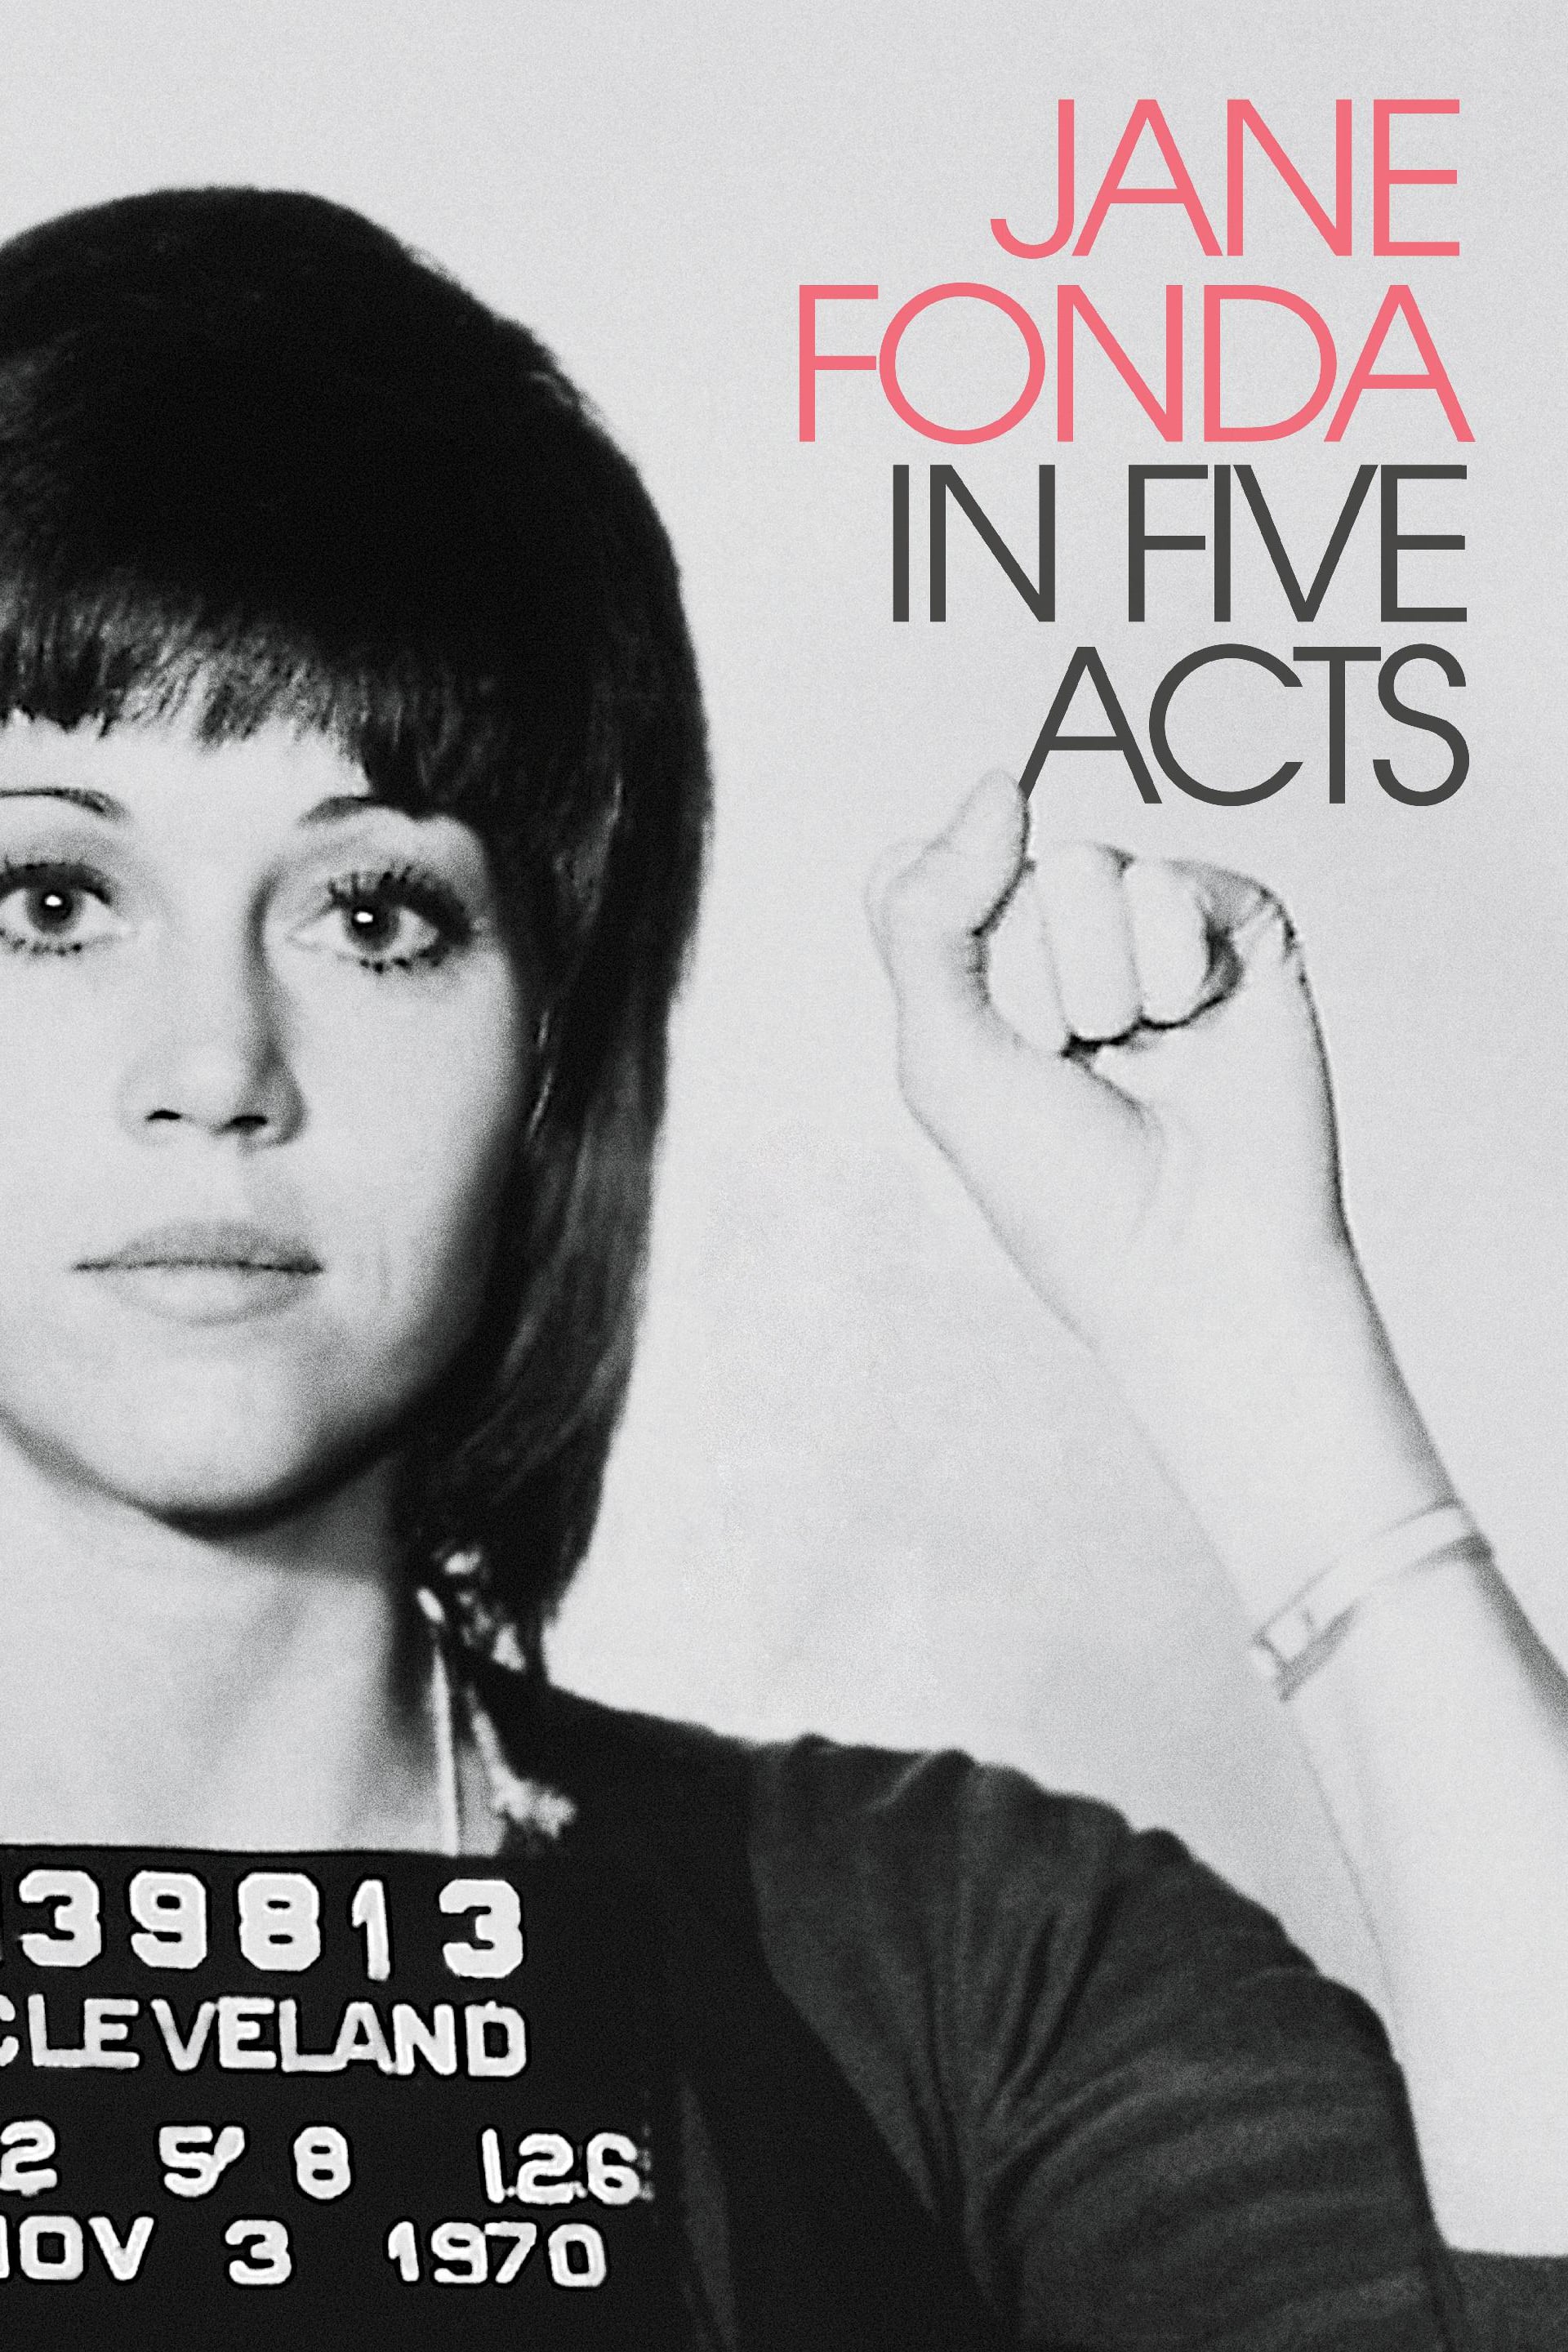 Caratula de JANE FONDA IN FIVE ACTS (Jane Fonda en Cinco Actos) 